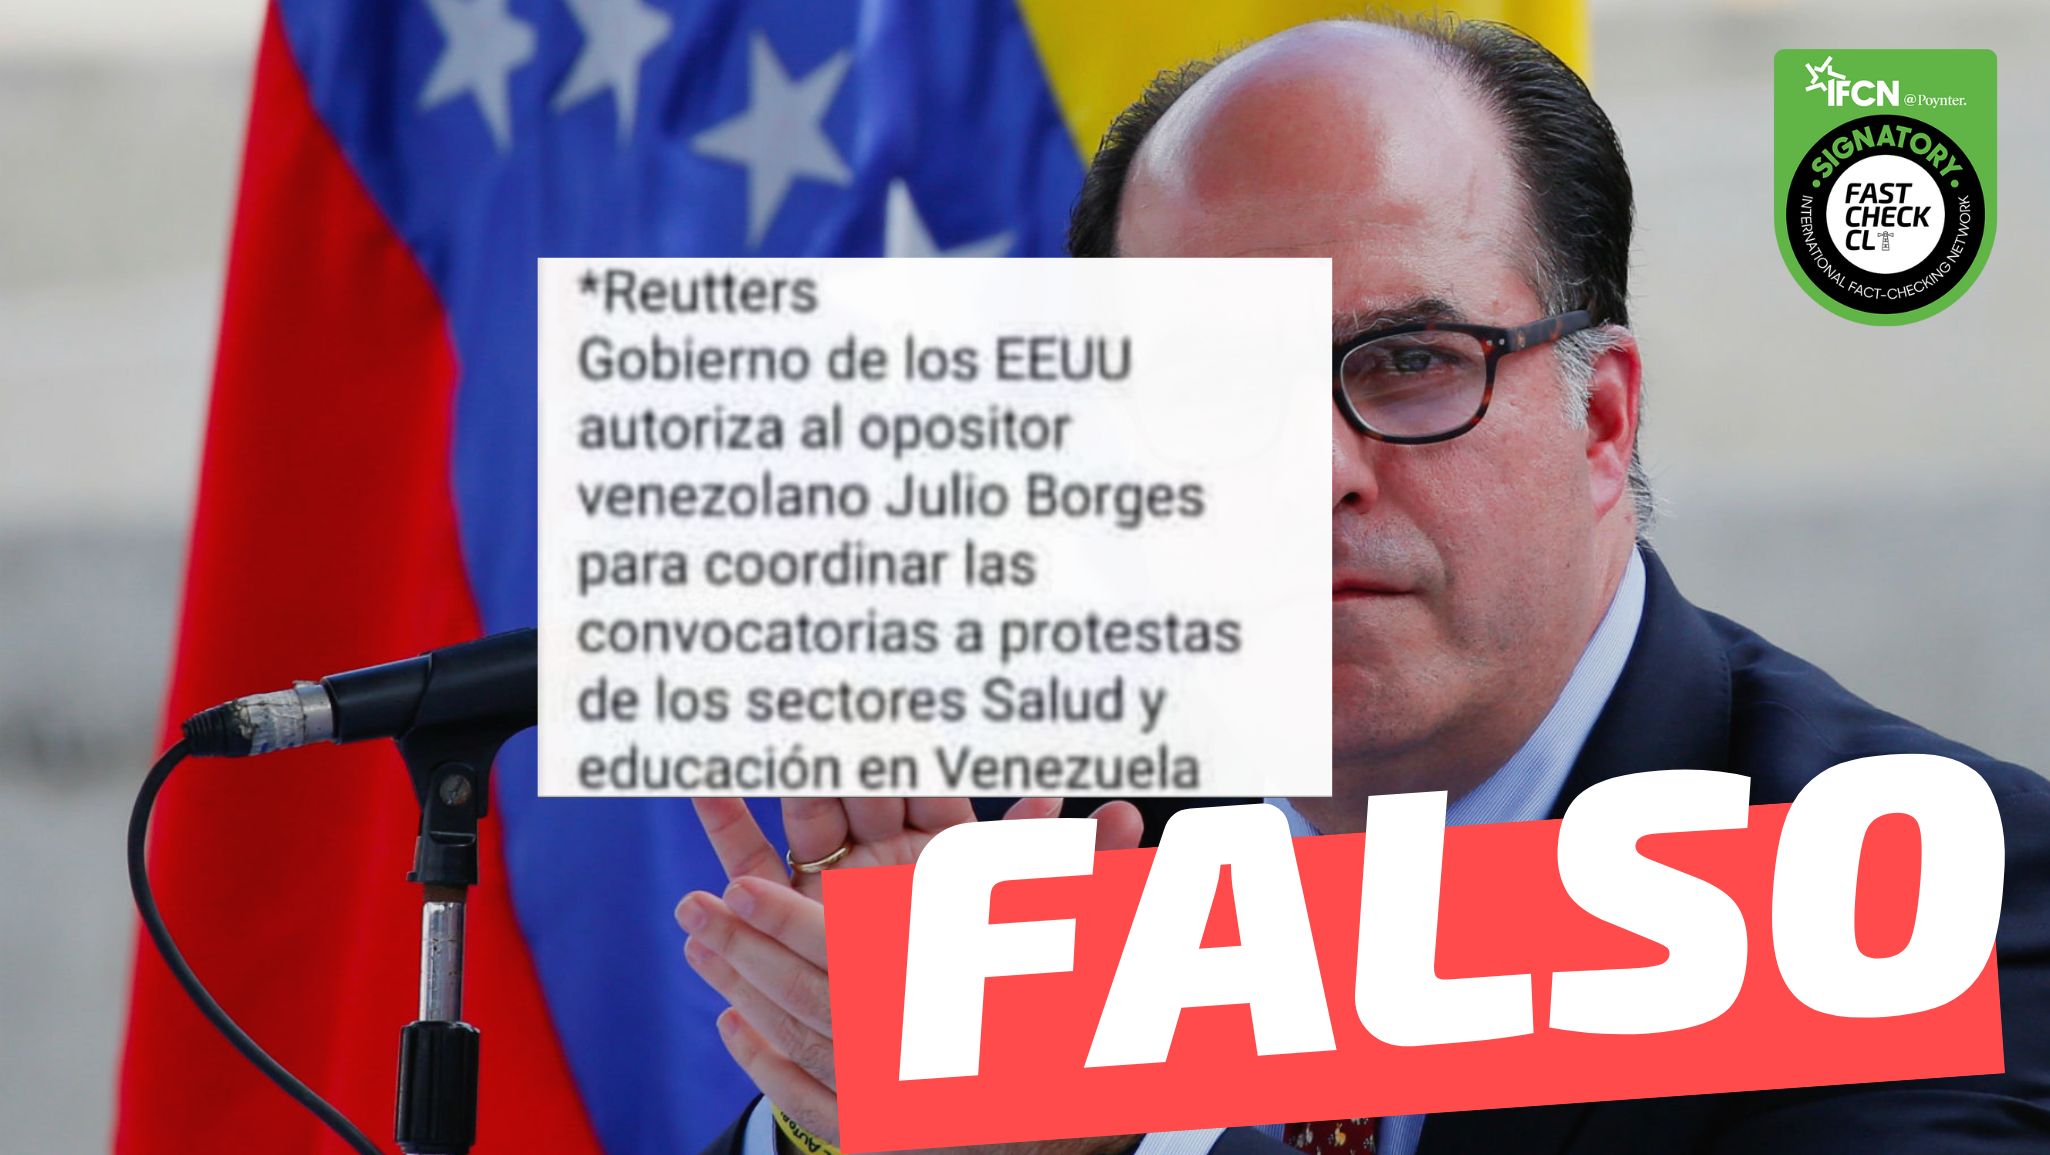 You are currently viewing “Reutters: Gobierno de los EE.UU. autoriza a opositor venezolano Julio Borges coordinar las convocatorias a protestas de los sectores de Salud y Educaci贸n en Venezuela”: #Falso